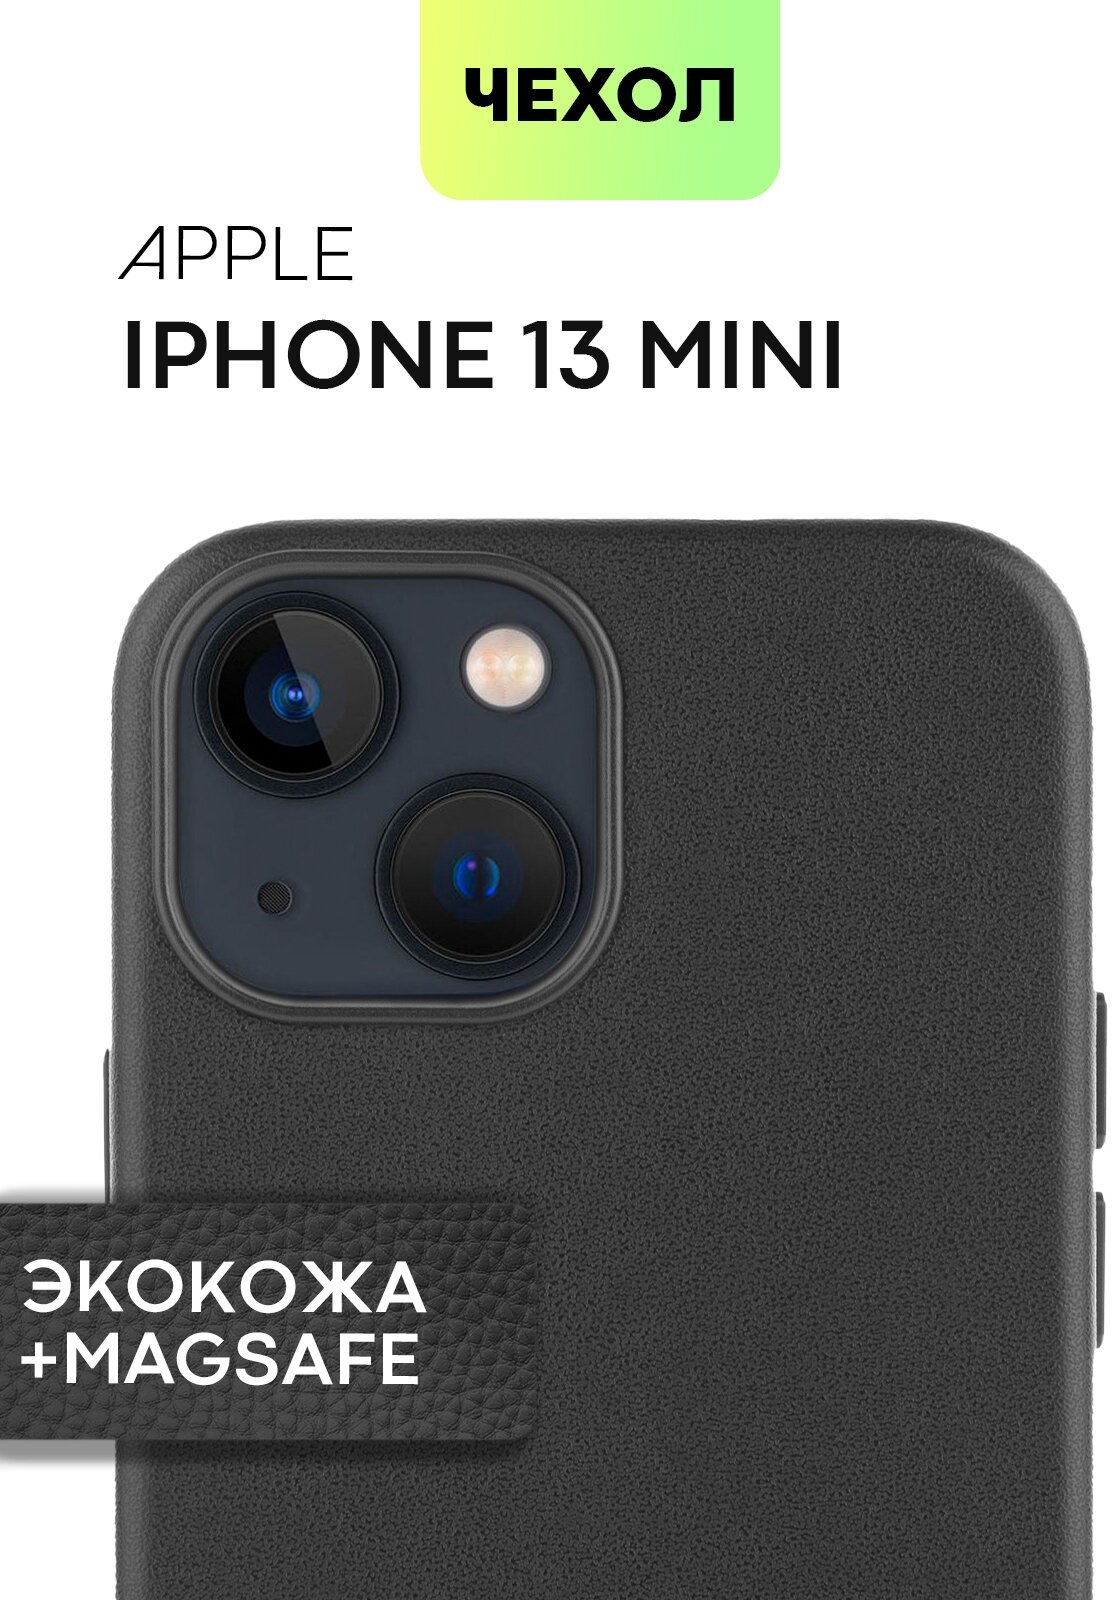 Кожаный чехол MagSafe для Apple iPhone 13 mini (Эпл Айфон 13 мини) с защитой дисплея, блока камер и микрофиброй (мягкая подкладка), черная экокожа